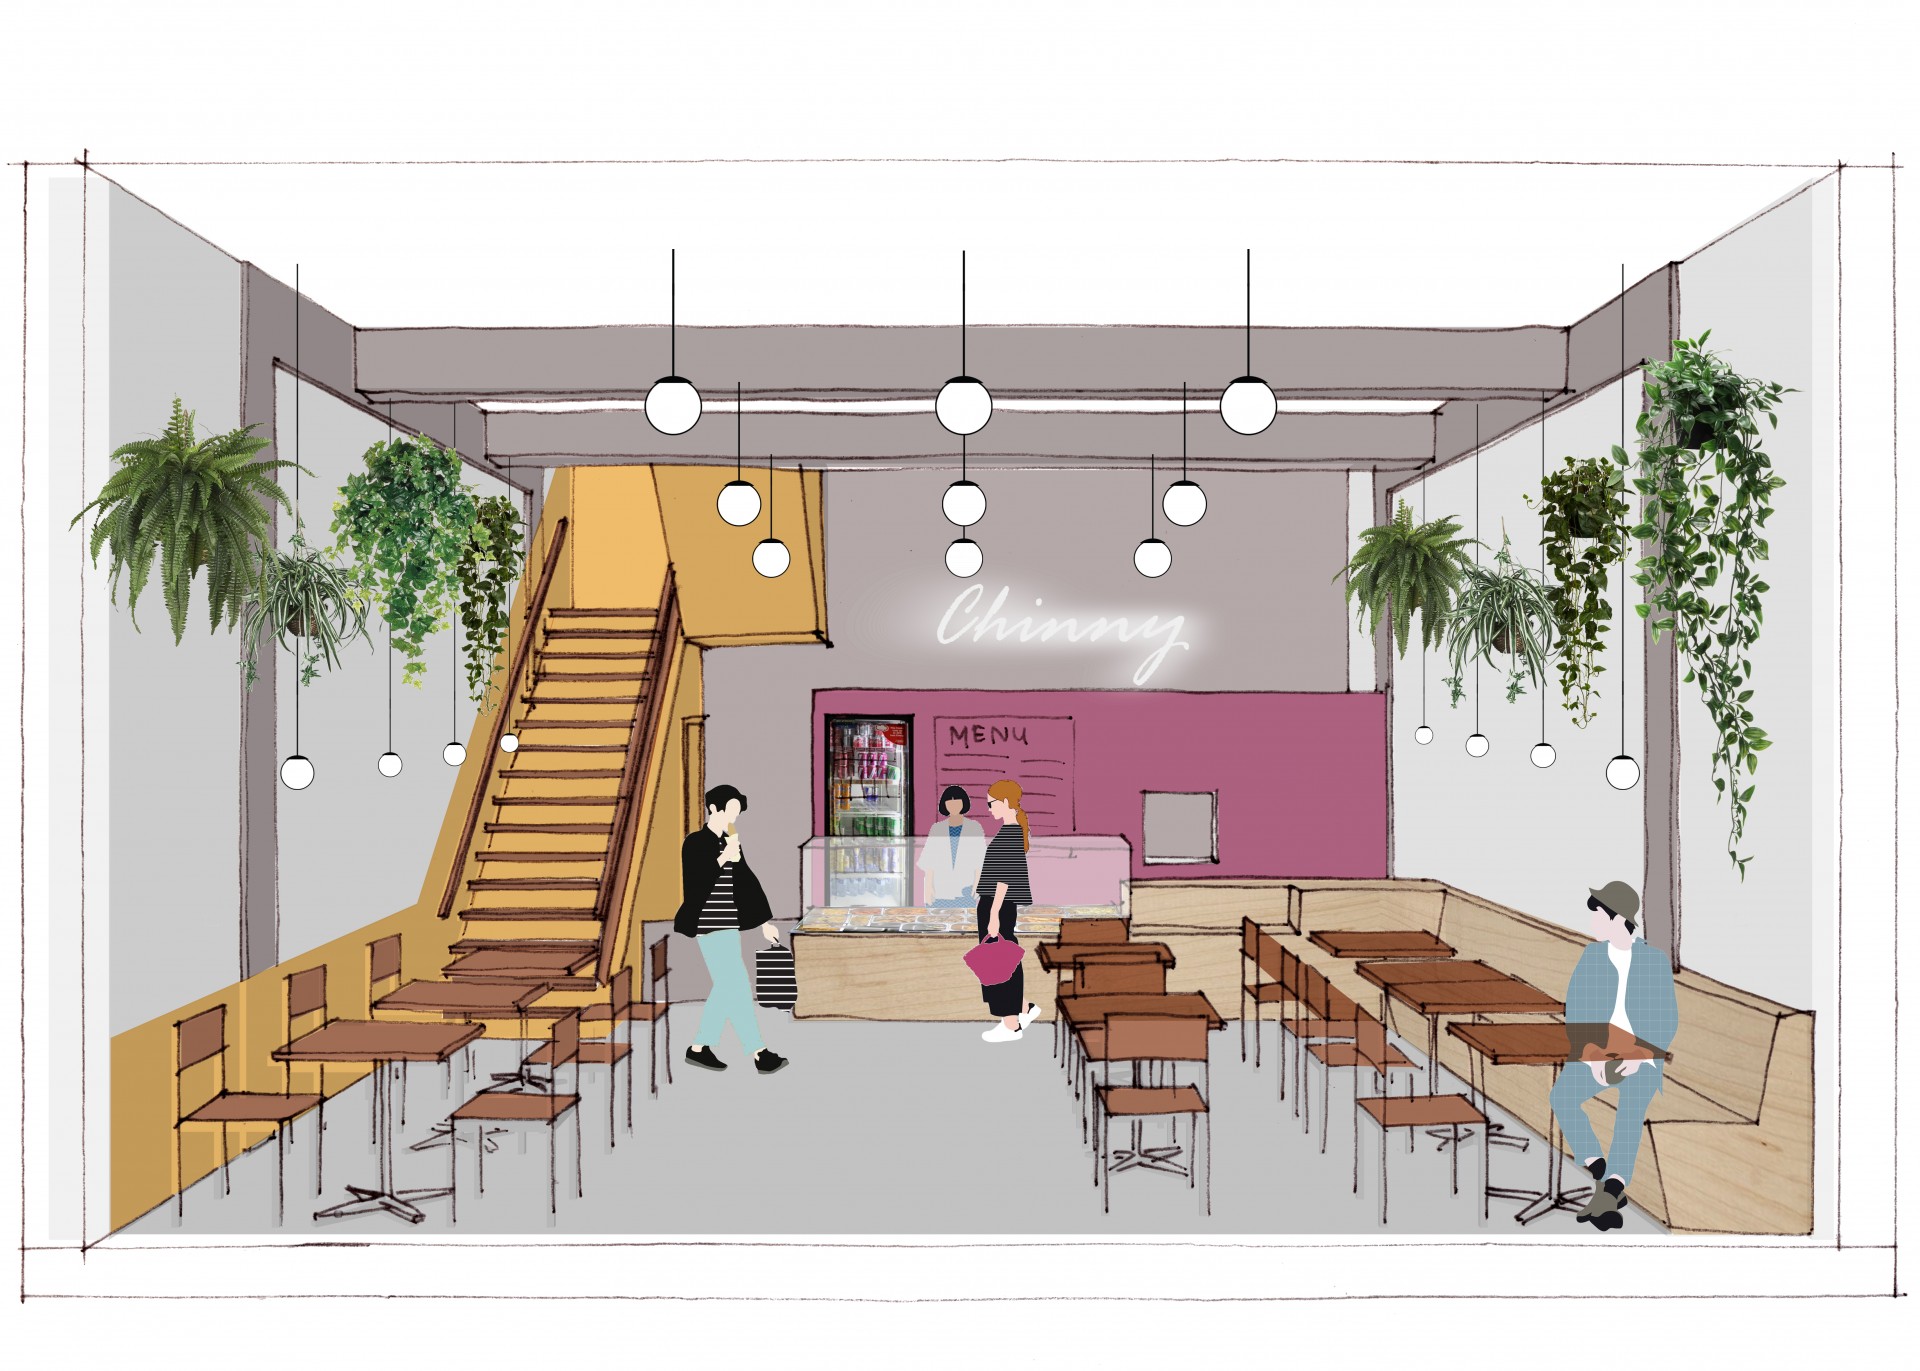 LAGADO-architects-Chinny-restaurant-interior-lijnbaan-rotterdam-1 (1)